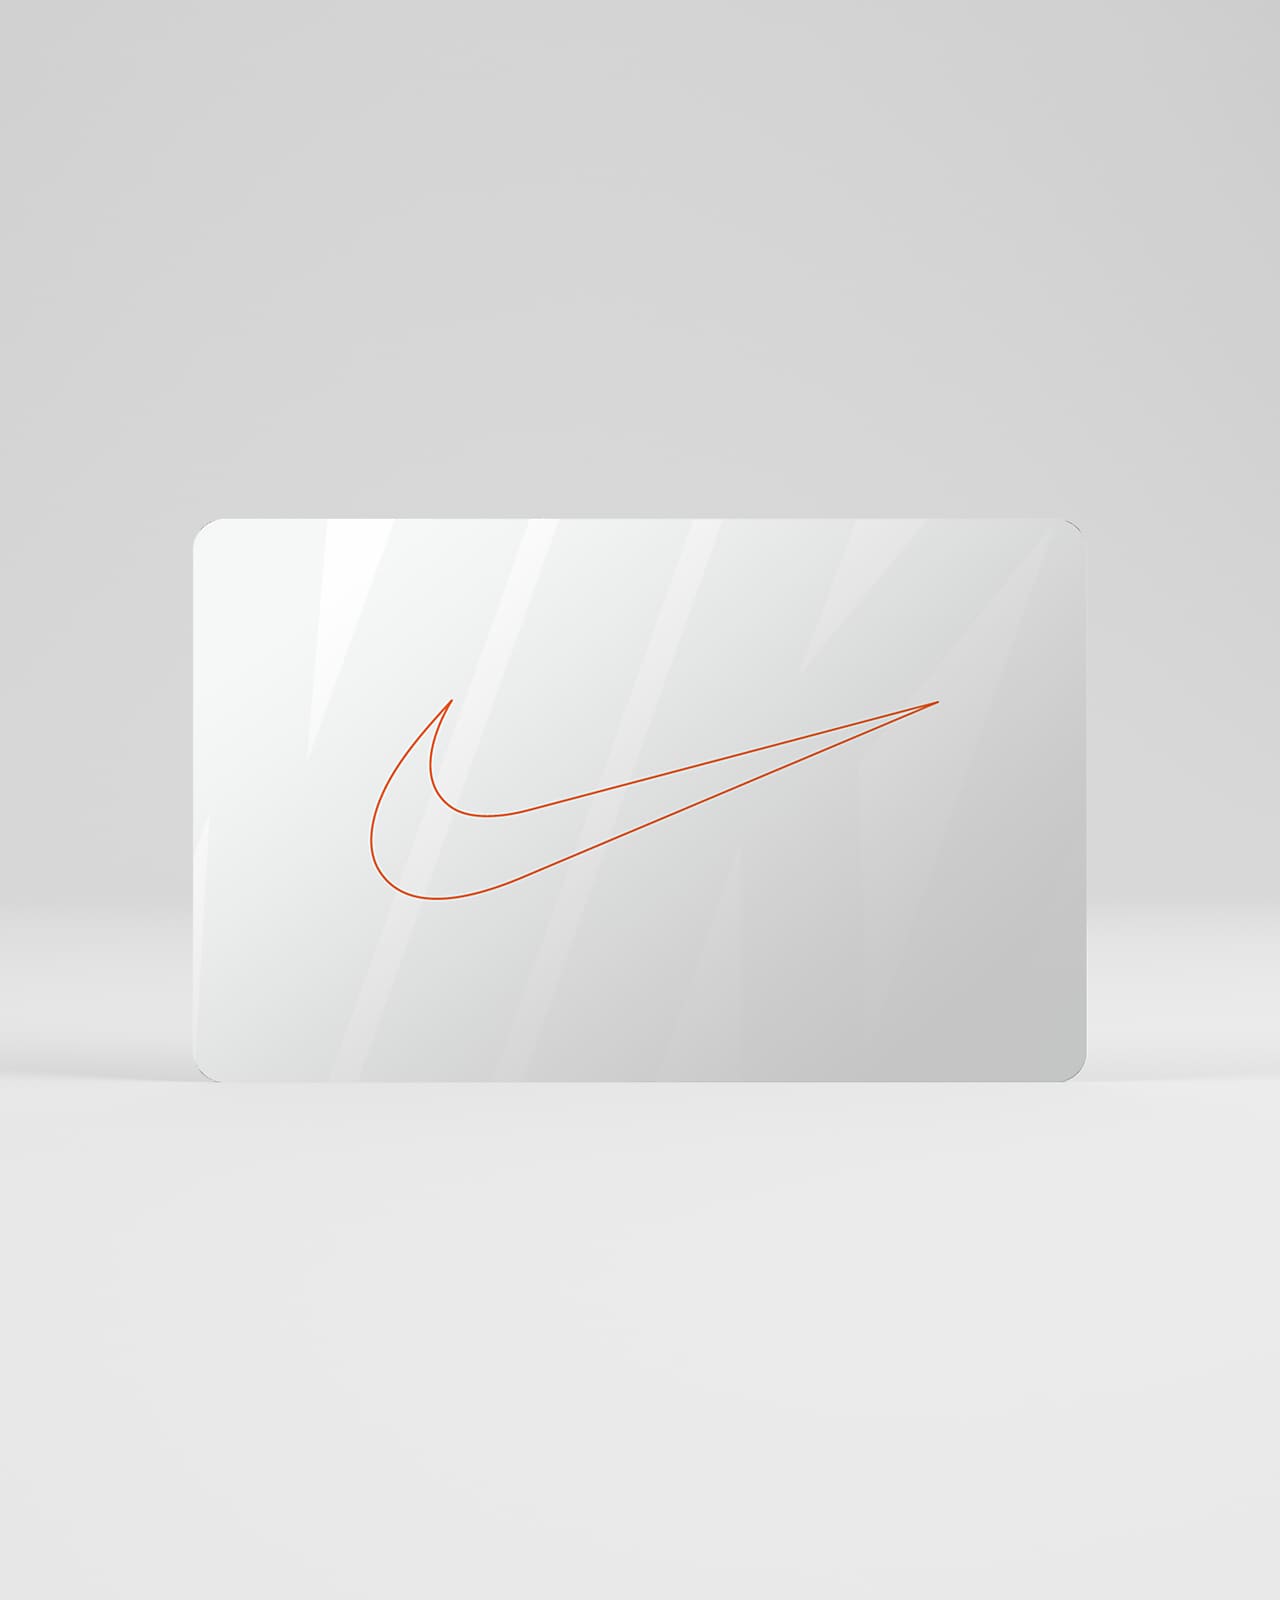 Nike Gift Card Mailed in a Mini Nike Shoebox